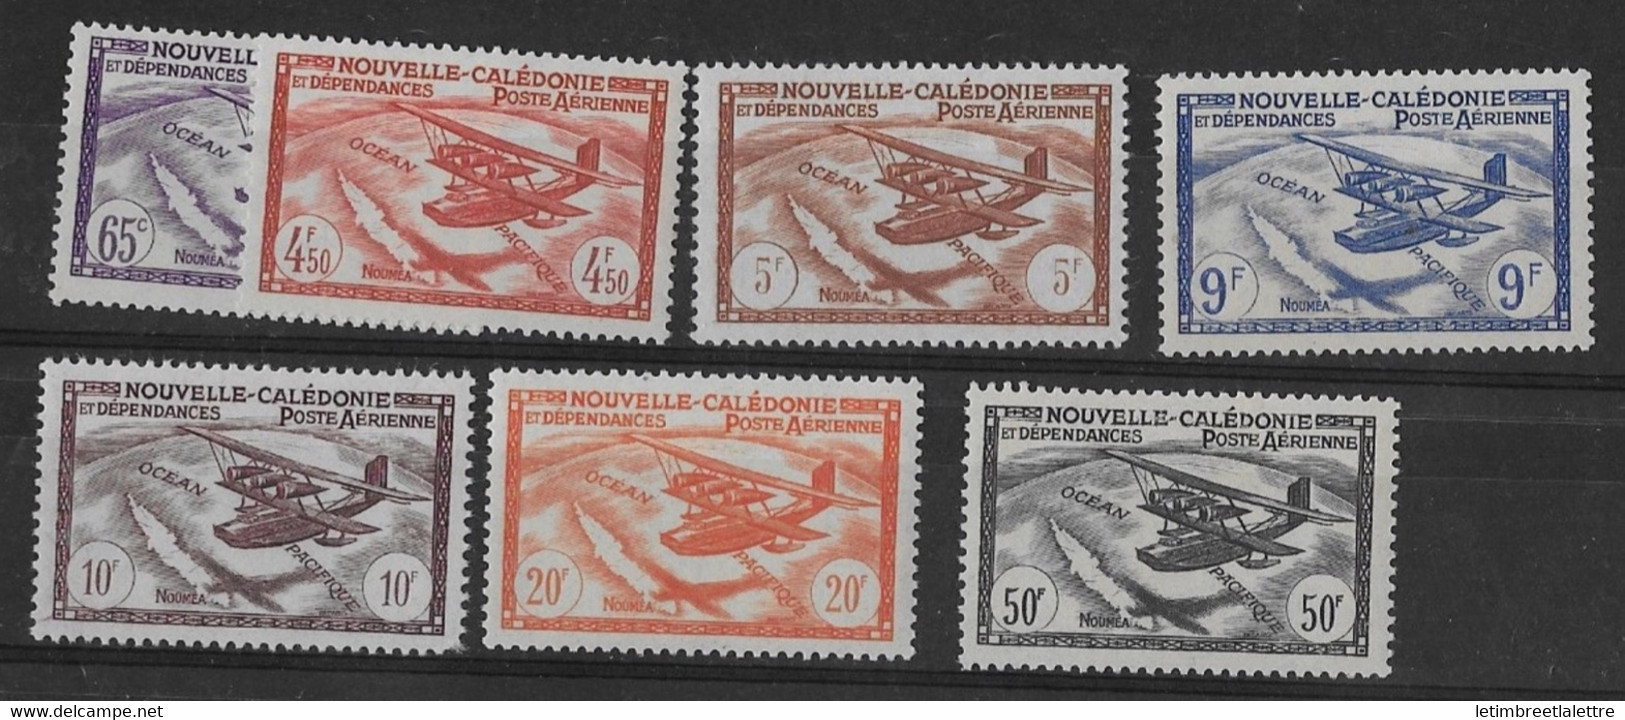 ⭐ Nouvelle Calédonie - Poste Aérienne - YT N° 39 à 45 ** - Neuf Sans Charnière - 1942 / 1943 ⭐ - Neufs